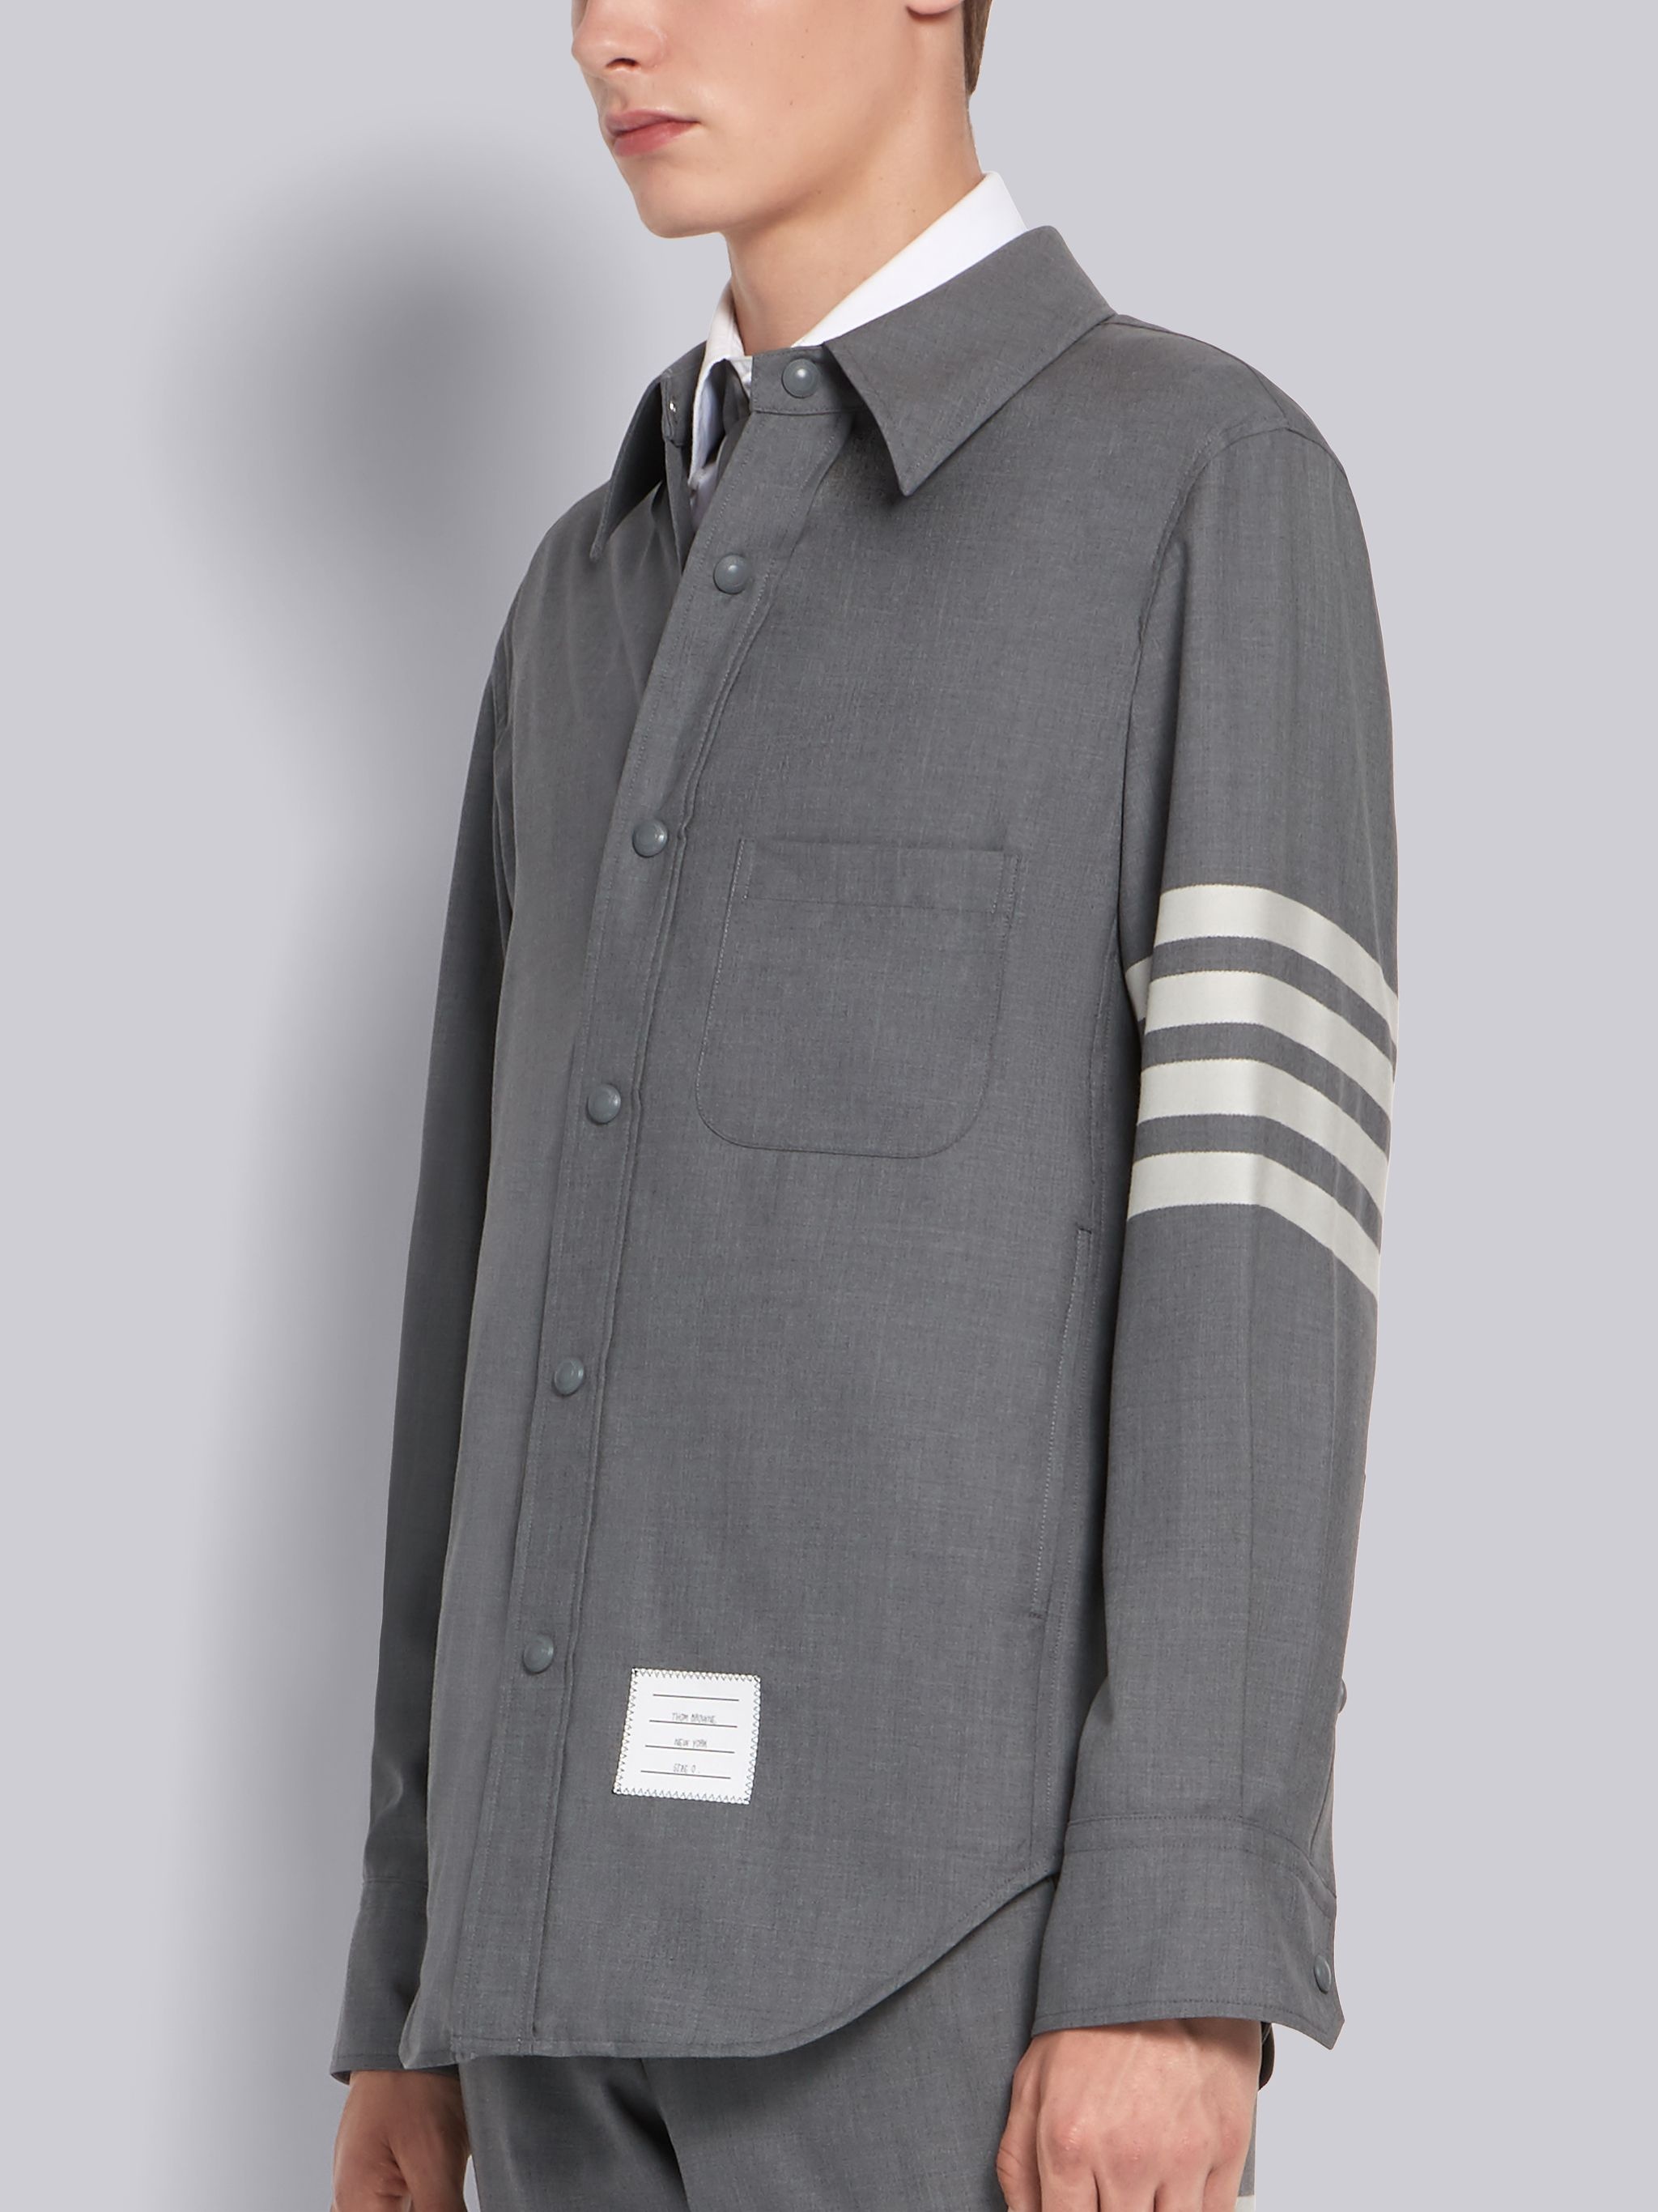 Medium Grey Wool Snap Front 4-Bar Shirt Jacket - 2